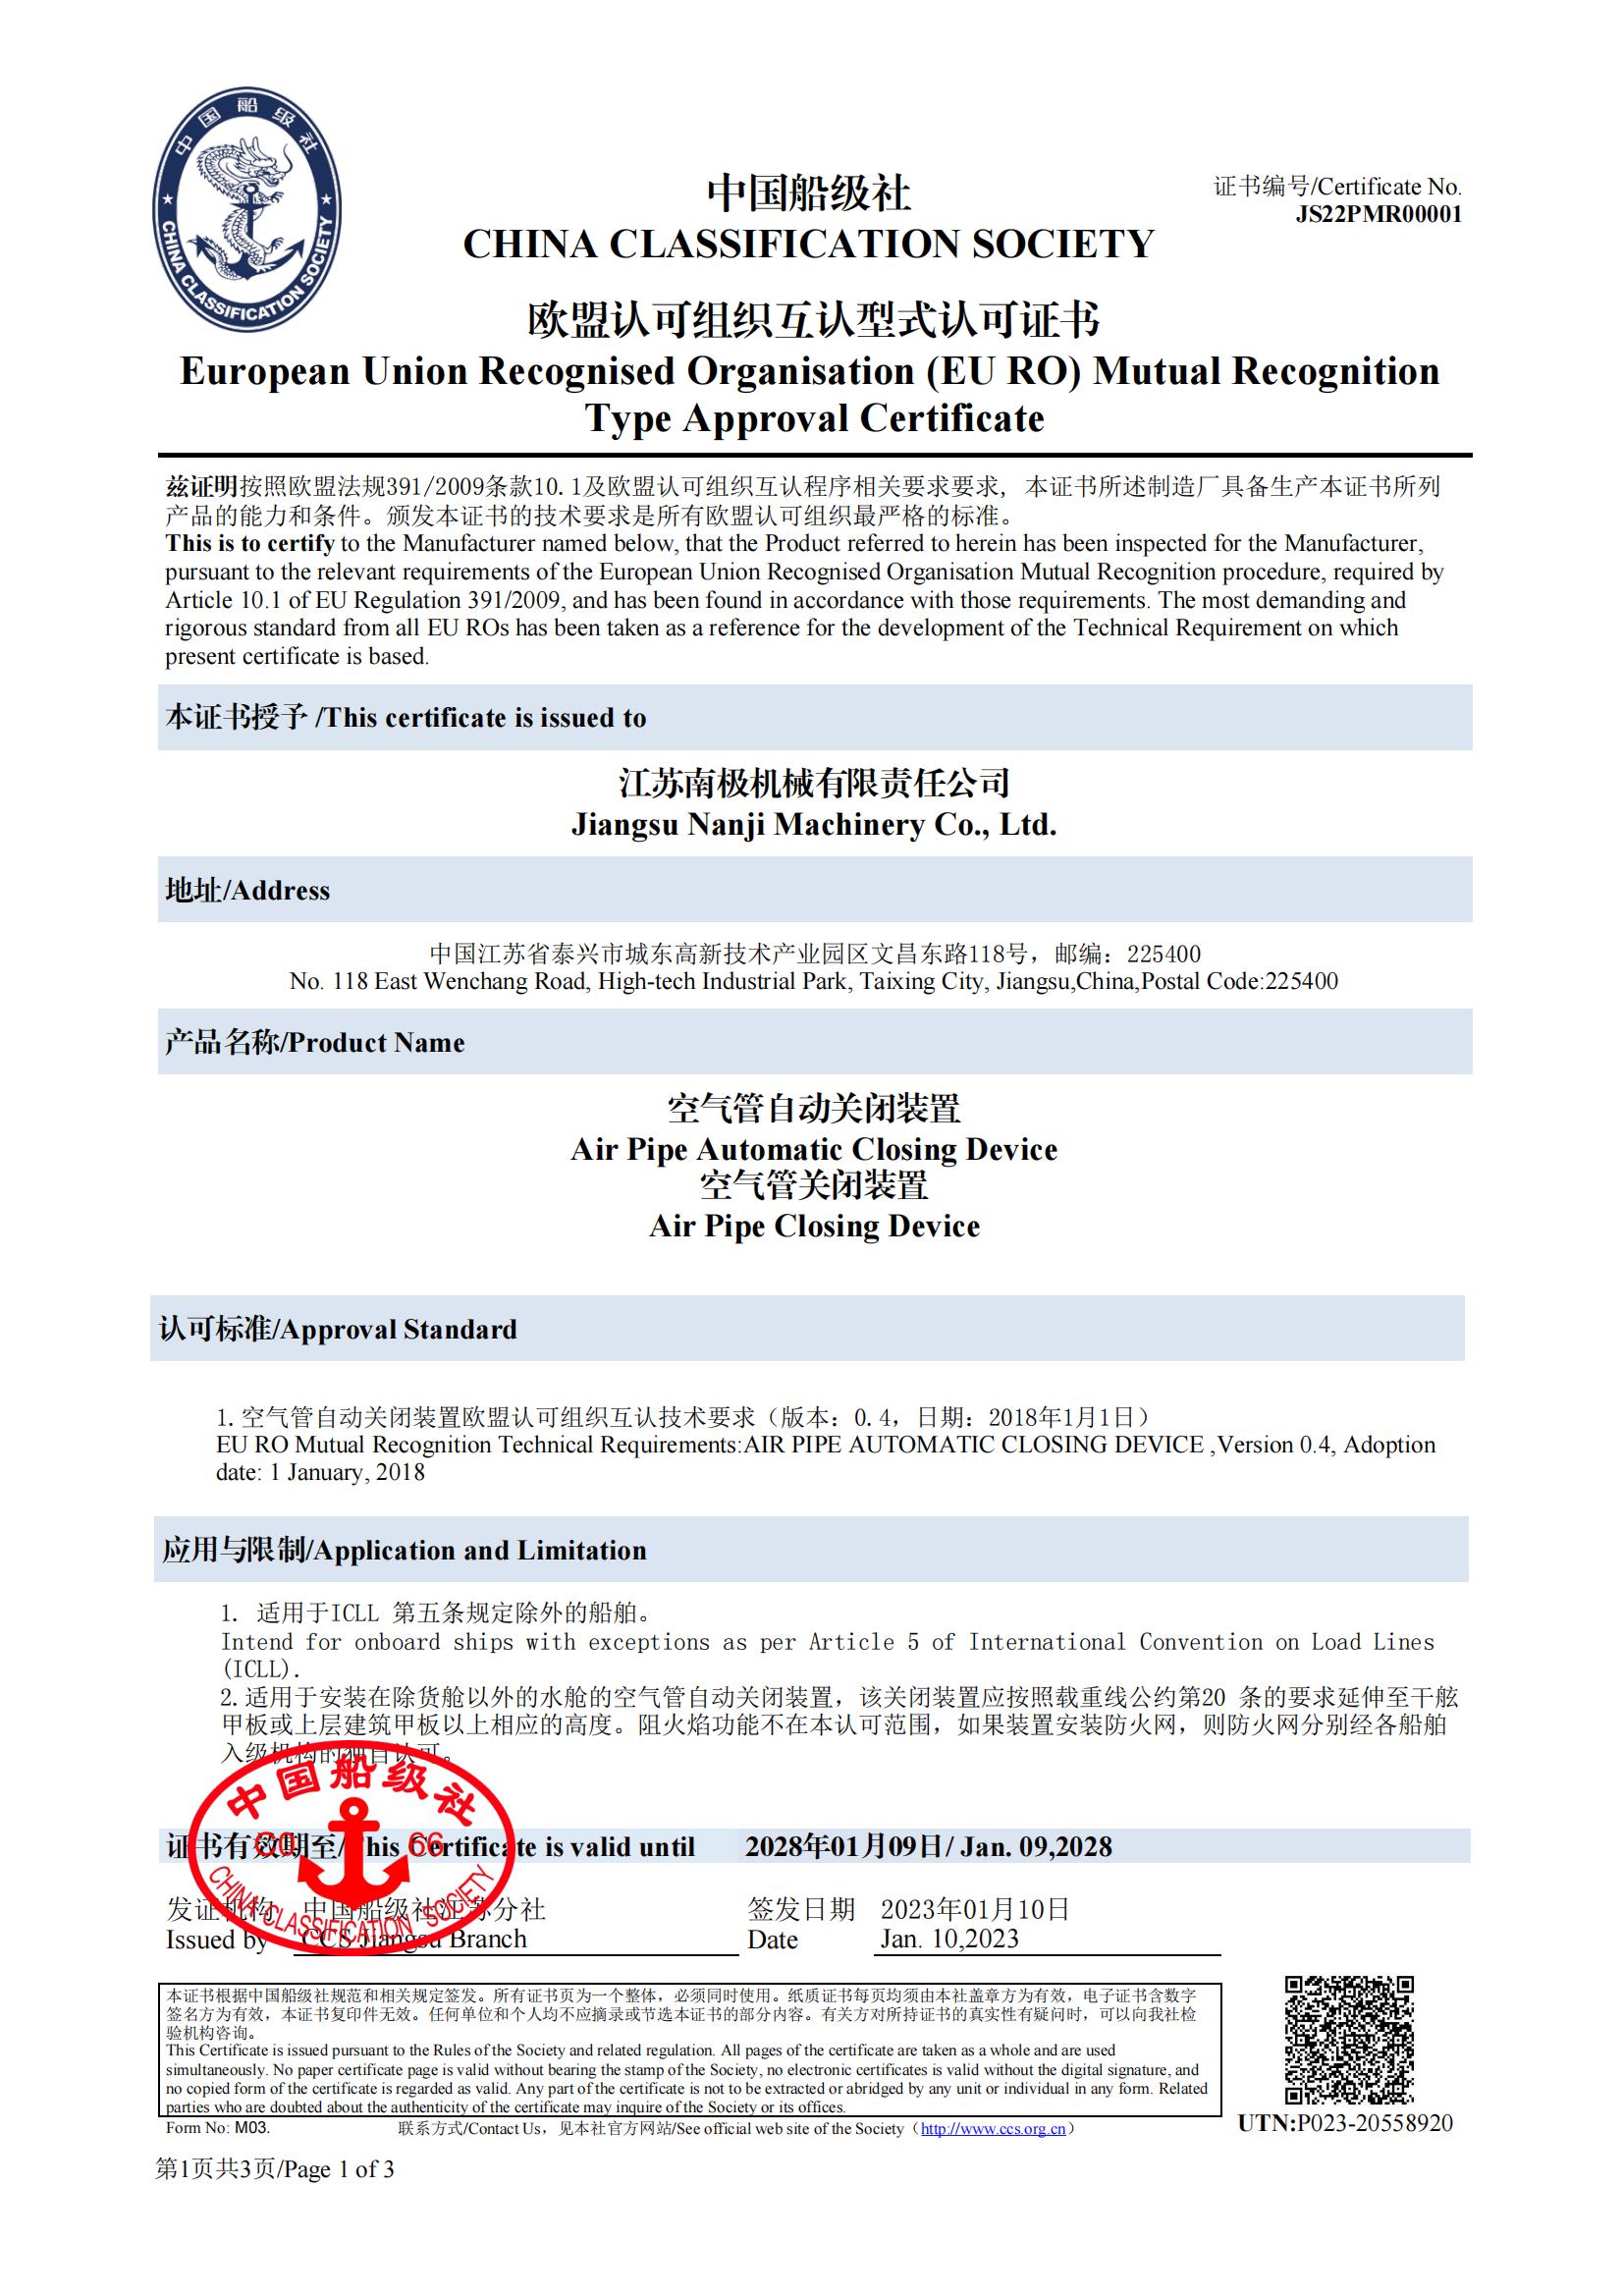 空气管关闭装置欧盟互认型式认可证书